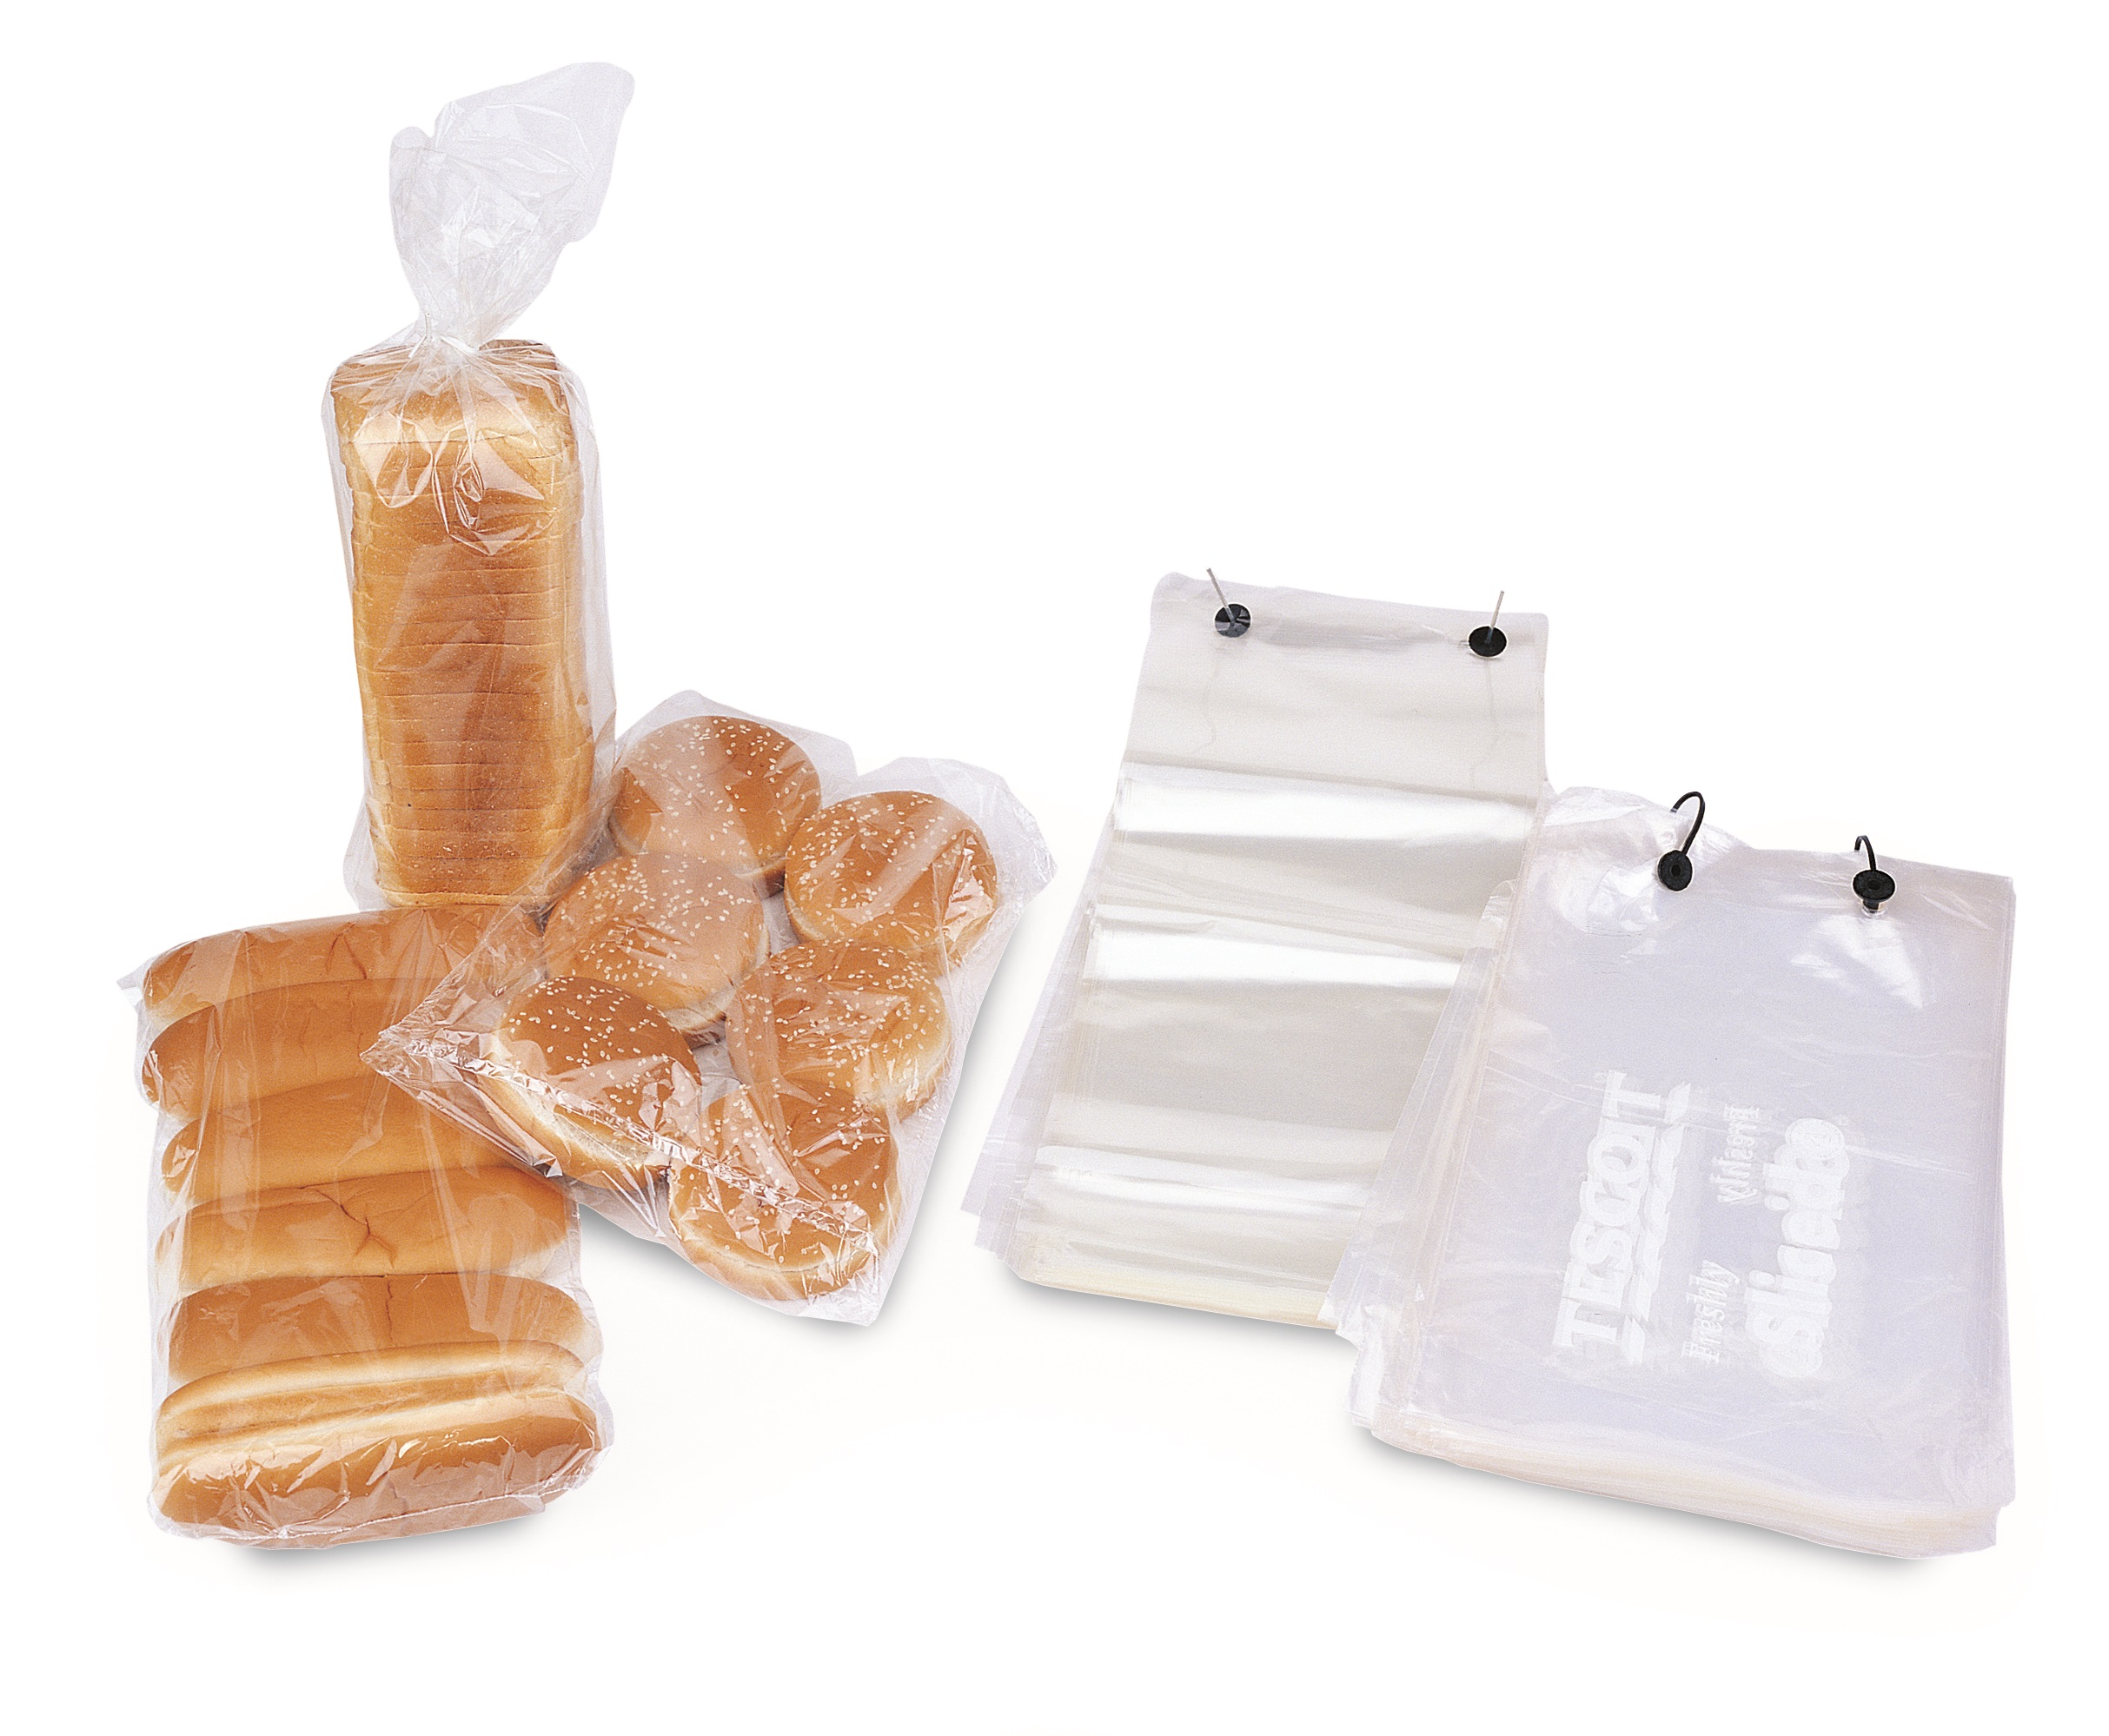 Plastic packages. Пакеты для упаковки хлеба и хлебобулочных изделий. Упаковка хлеба в пакеты с клипсой. Полиэтиленовый пакет для упаковки. Полиэтиленовый пакет прозрачный.